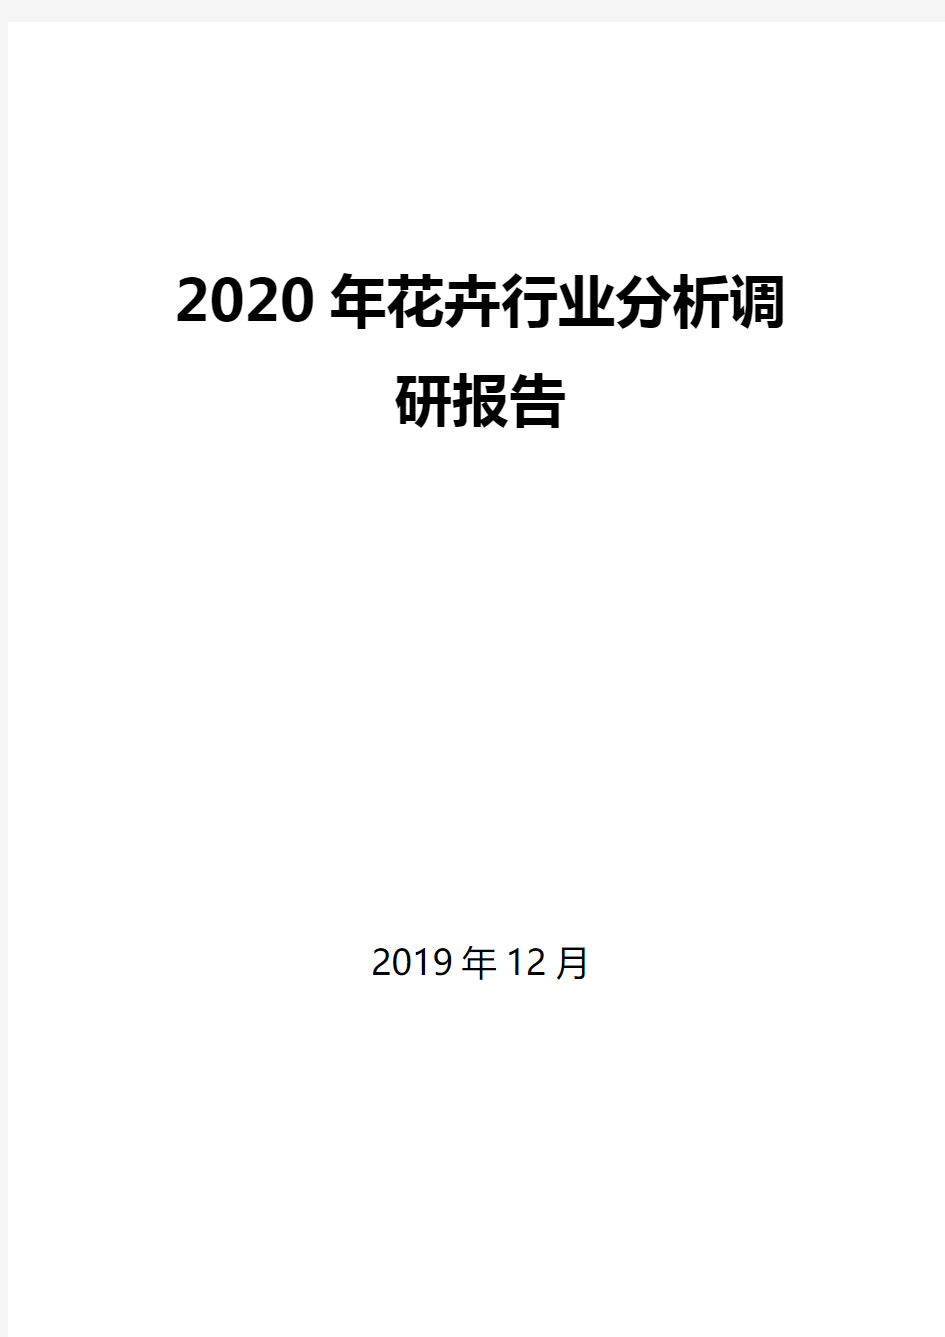 2020年花卉行业分析调研报告